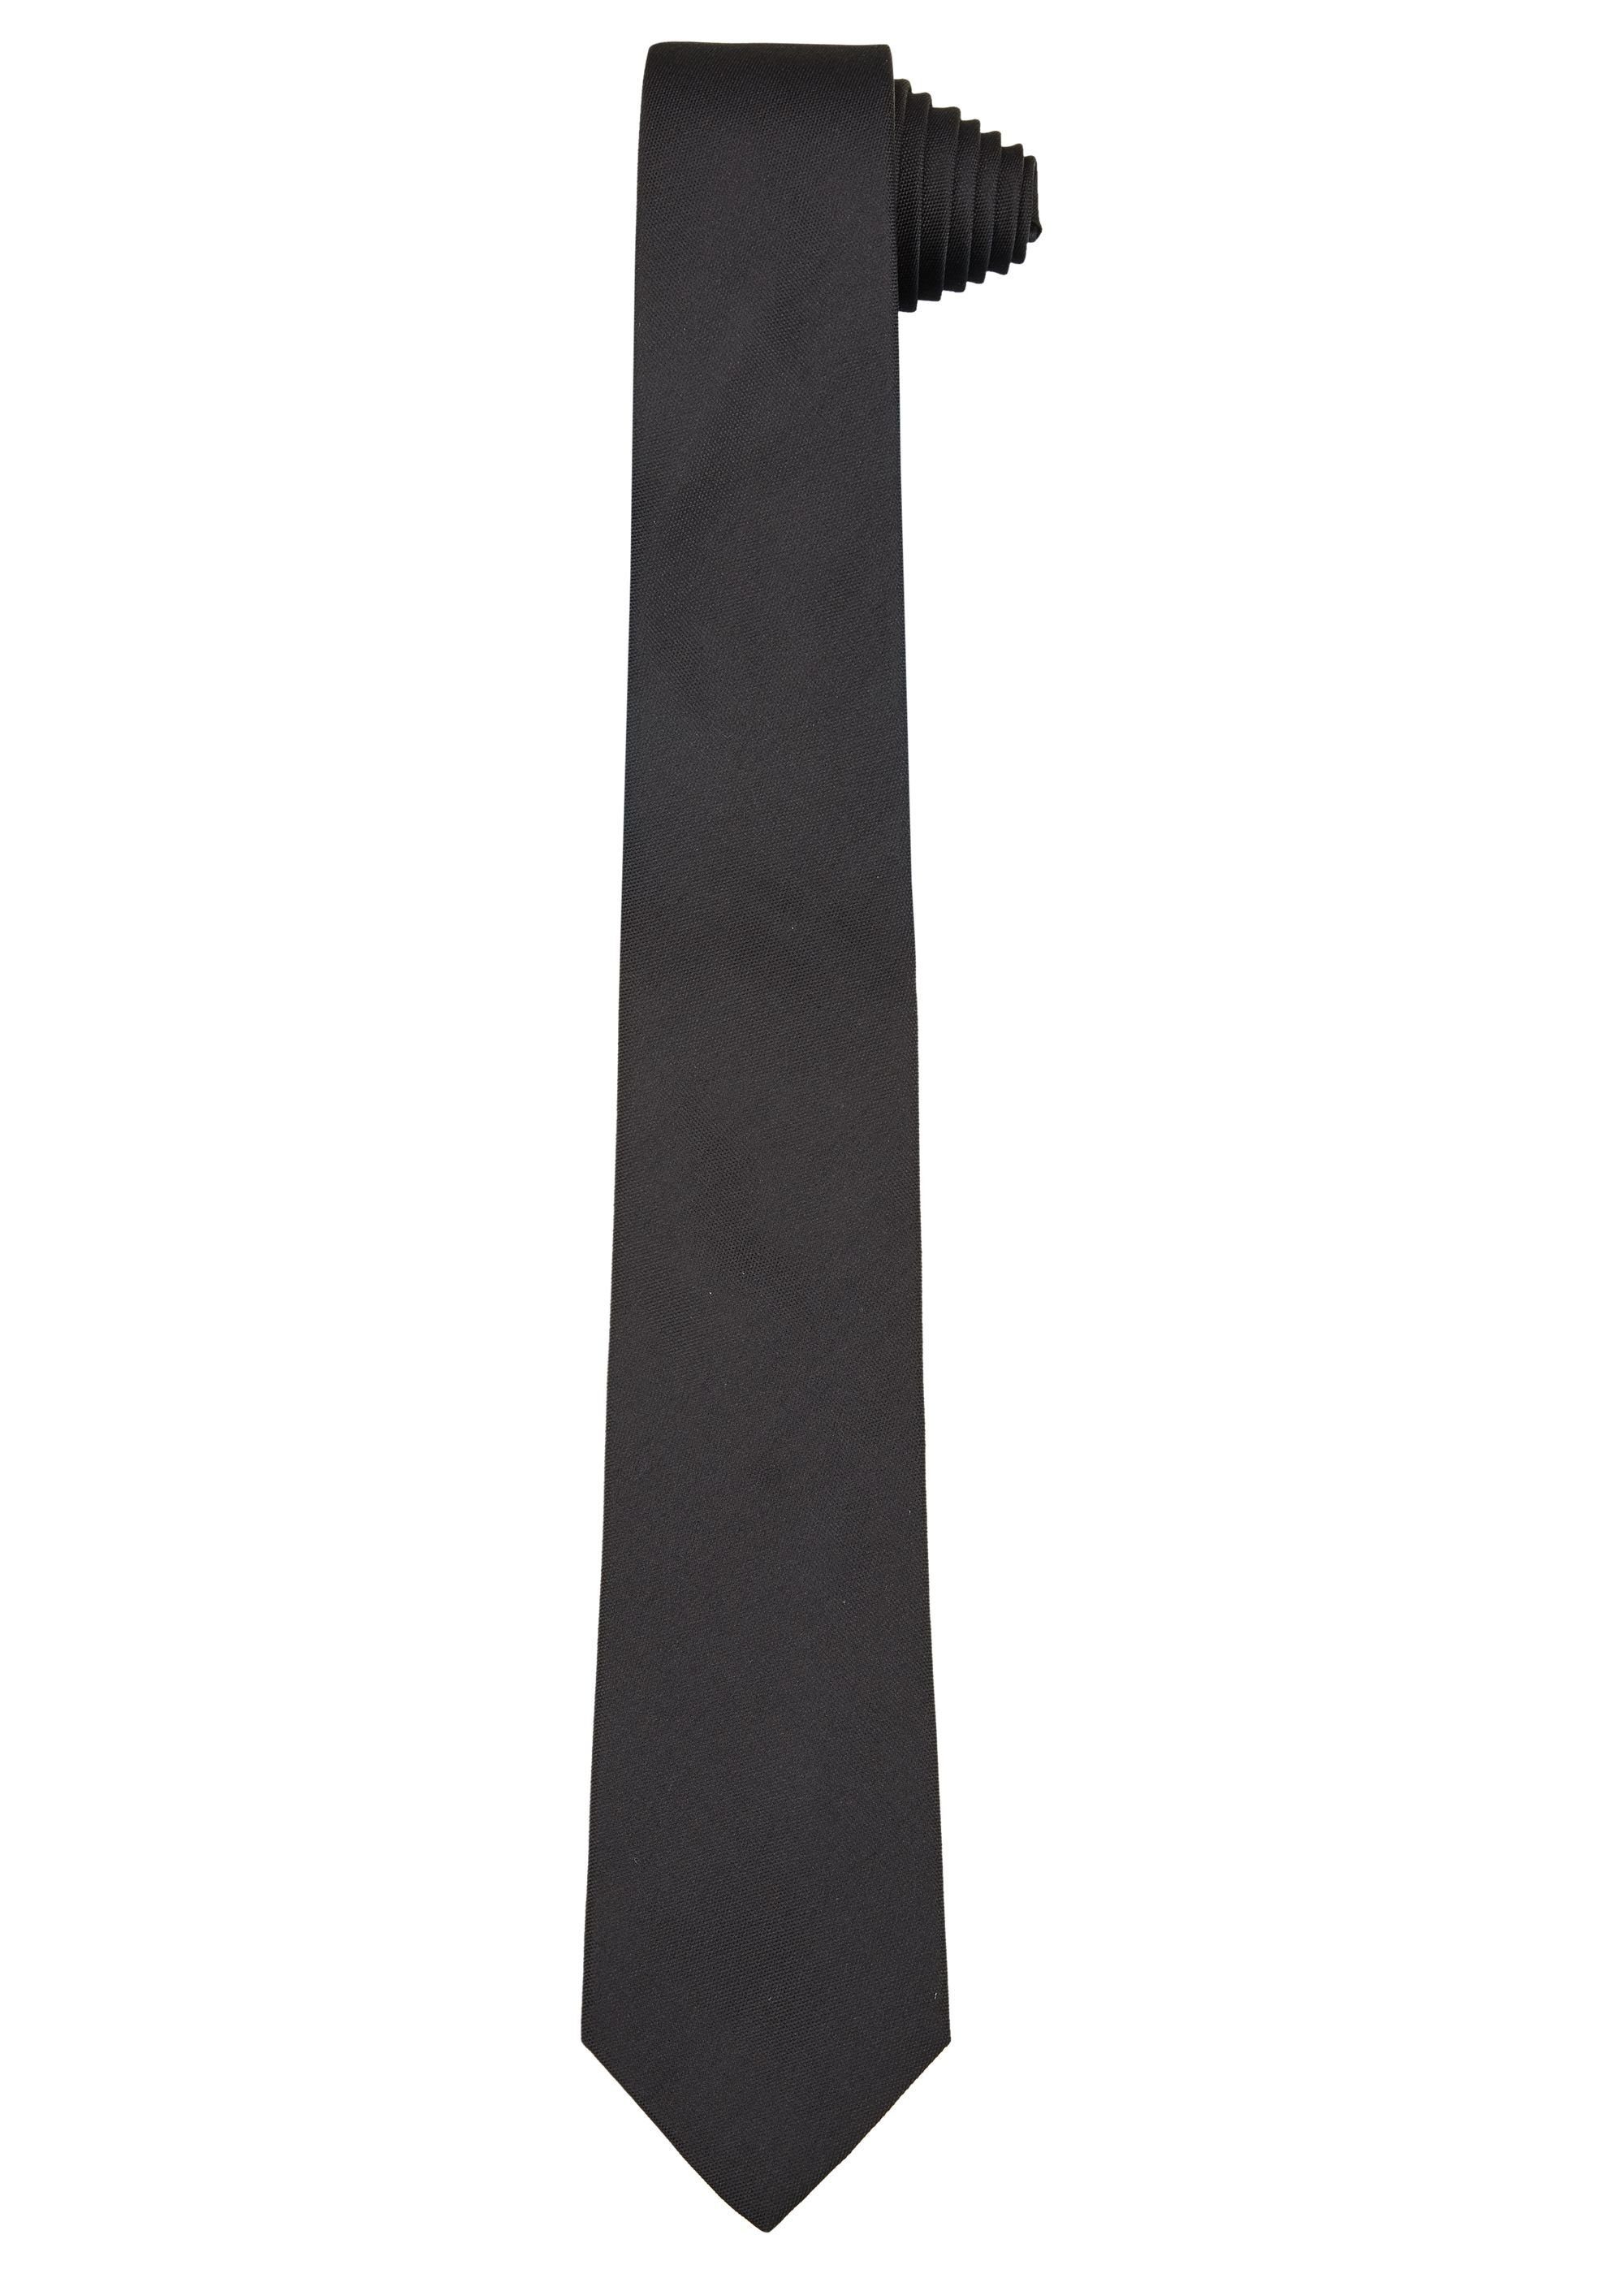 HECHTER PARIS Krawatte aus reiner Seide black